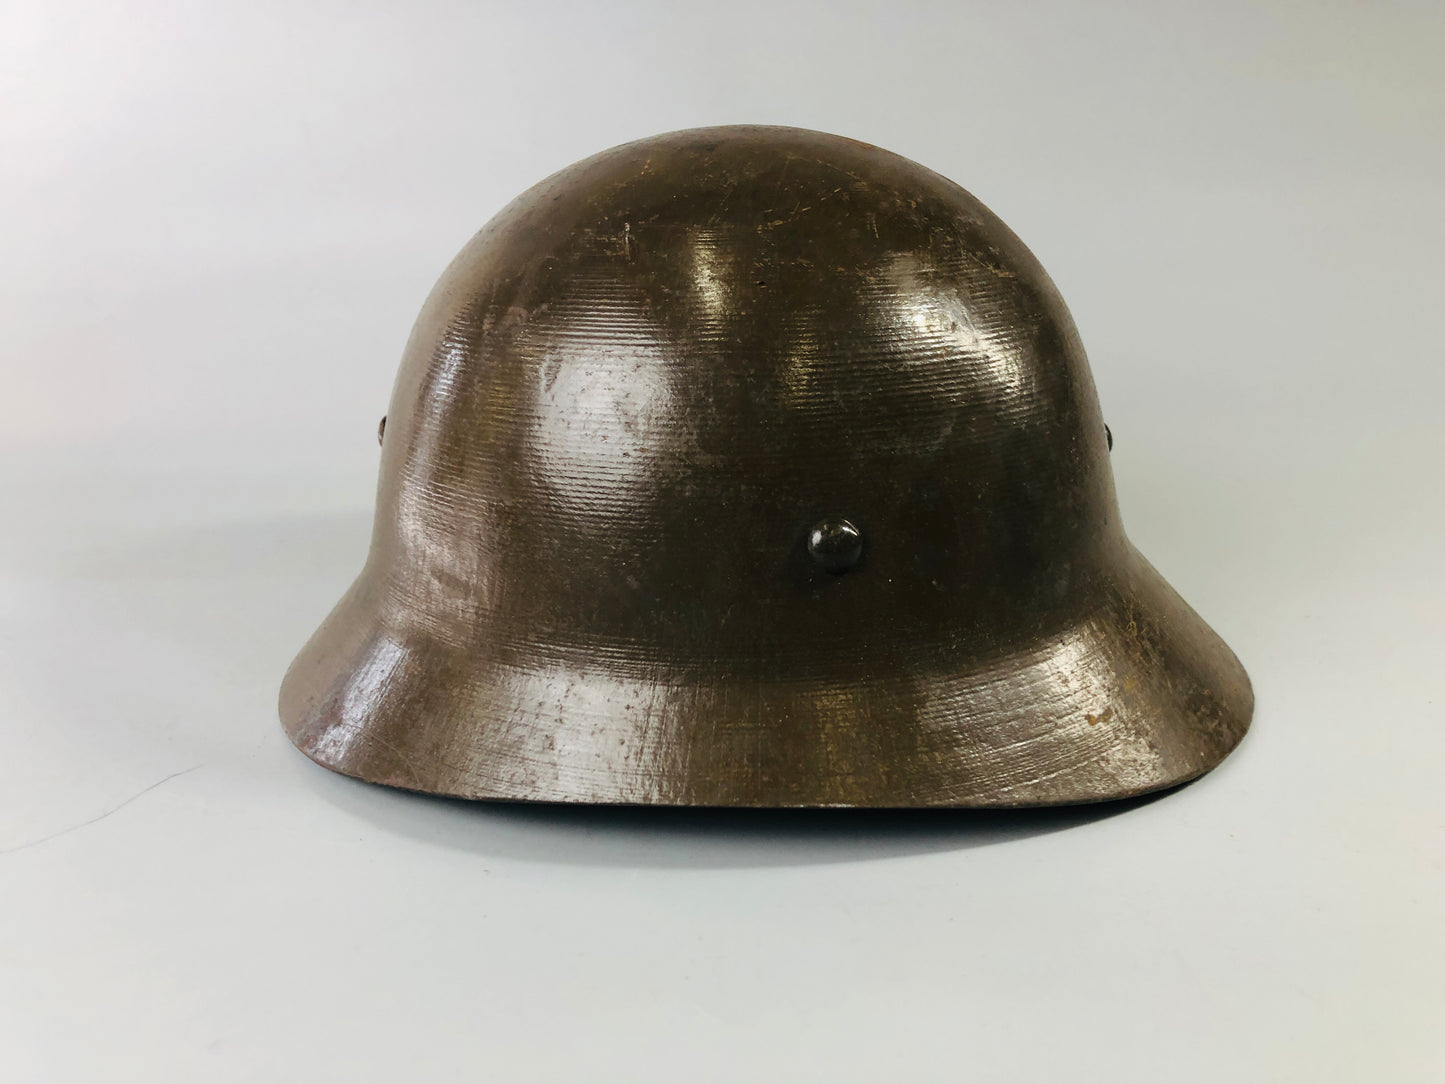 Y7008 [VIDEO] Imperial Japan Army Iron Helmet military personal gear Japan WW2 vintage